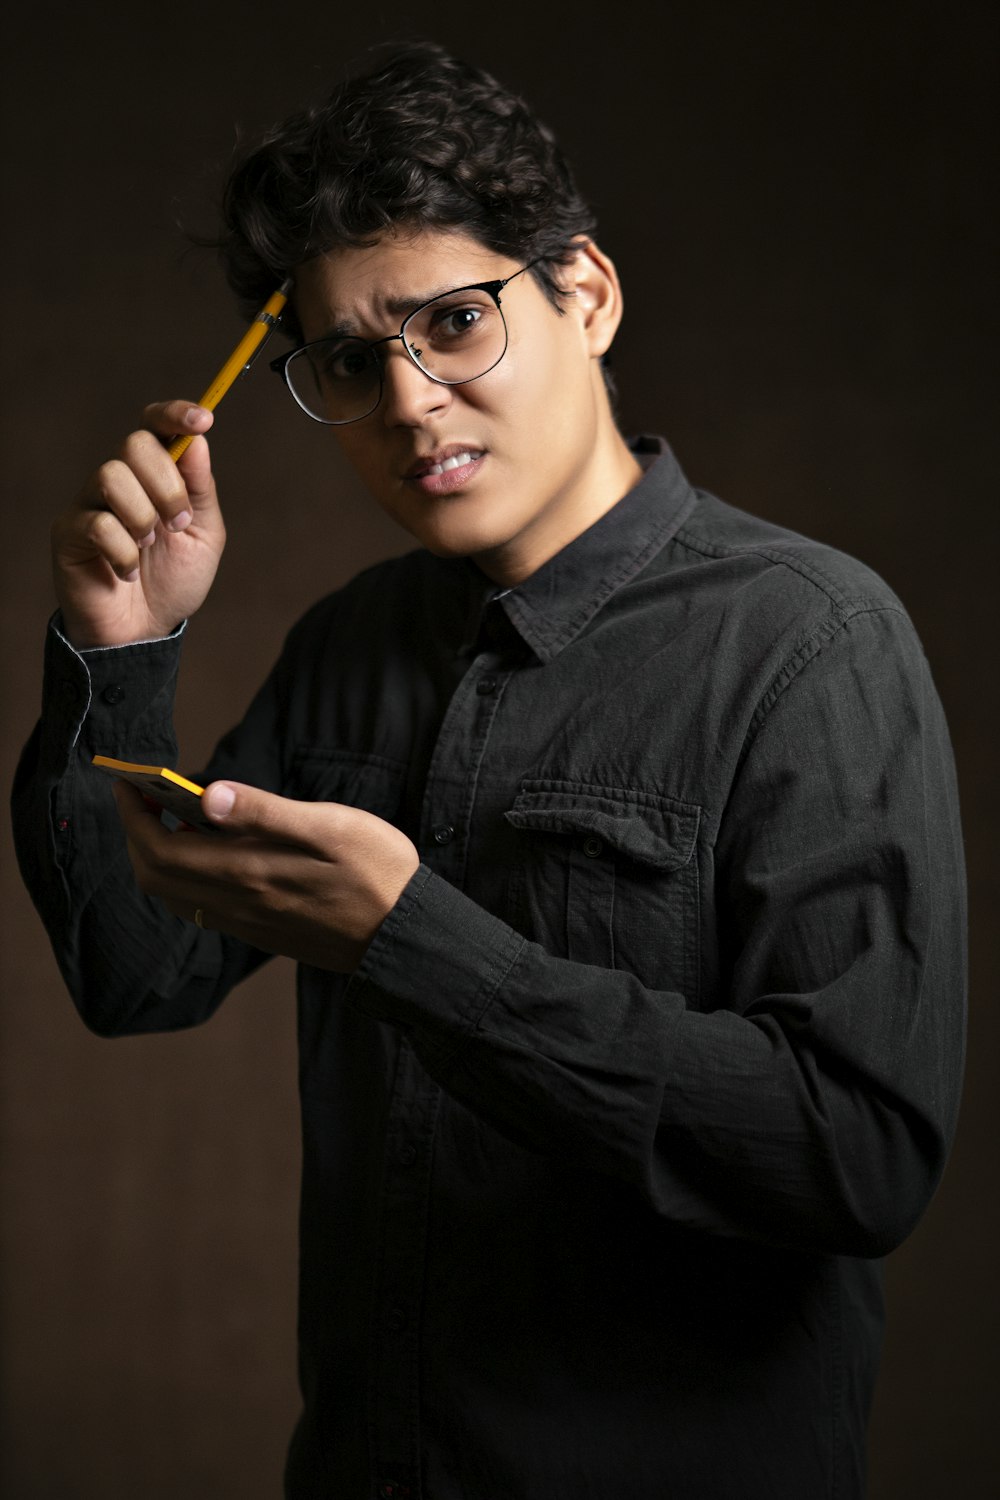 Mann in schwarzer Jeansjacke mit Bleistift und gelben Haftnotizen steht da und zeigt verwirrte Reaktion